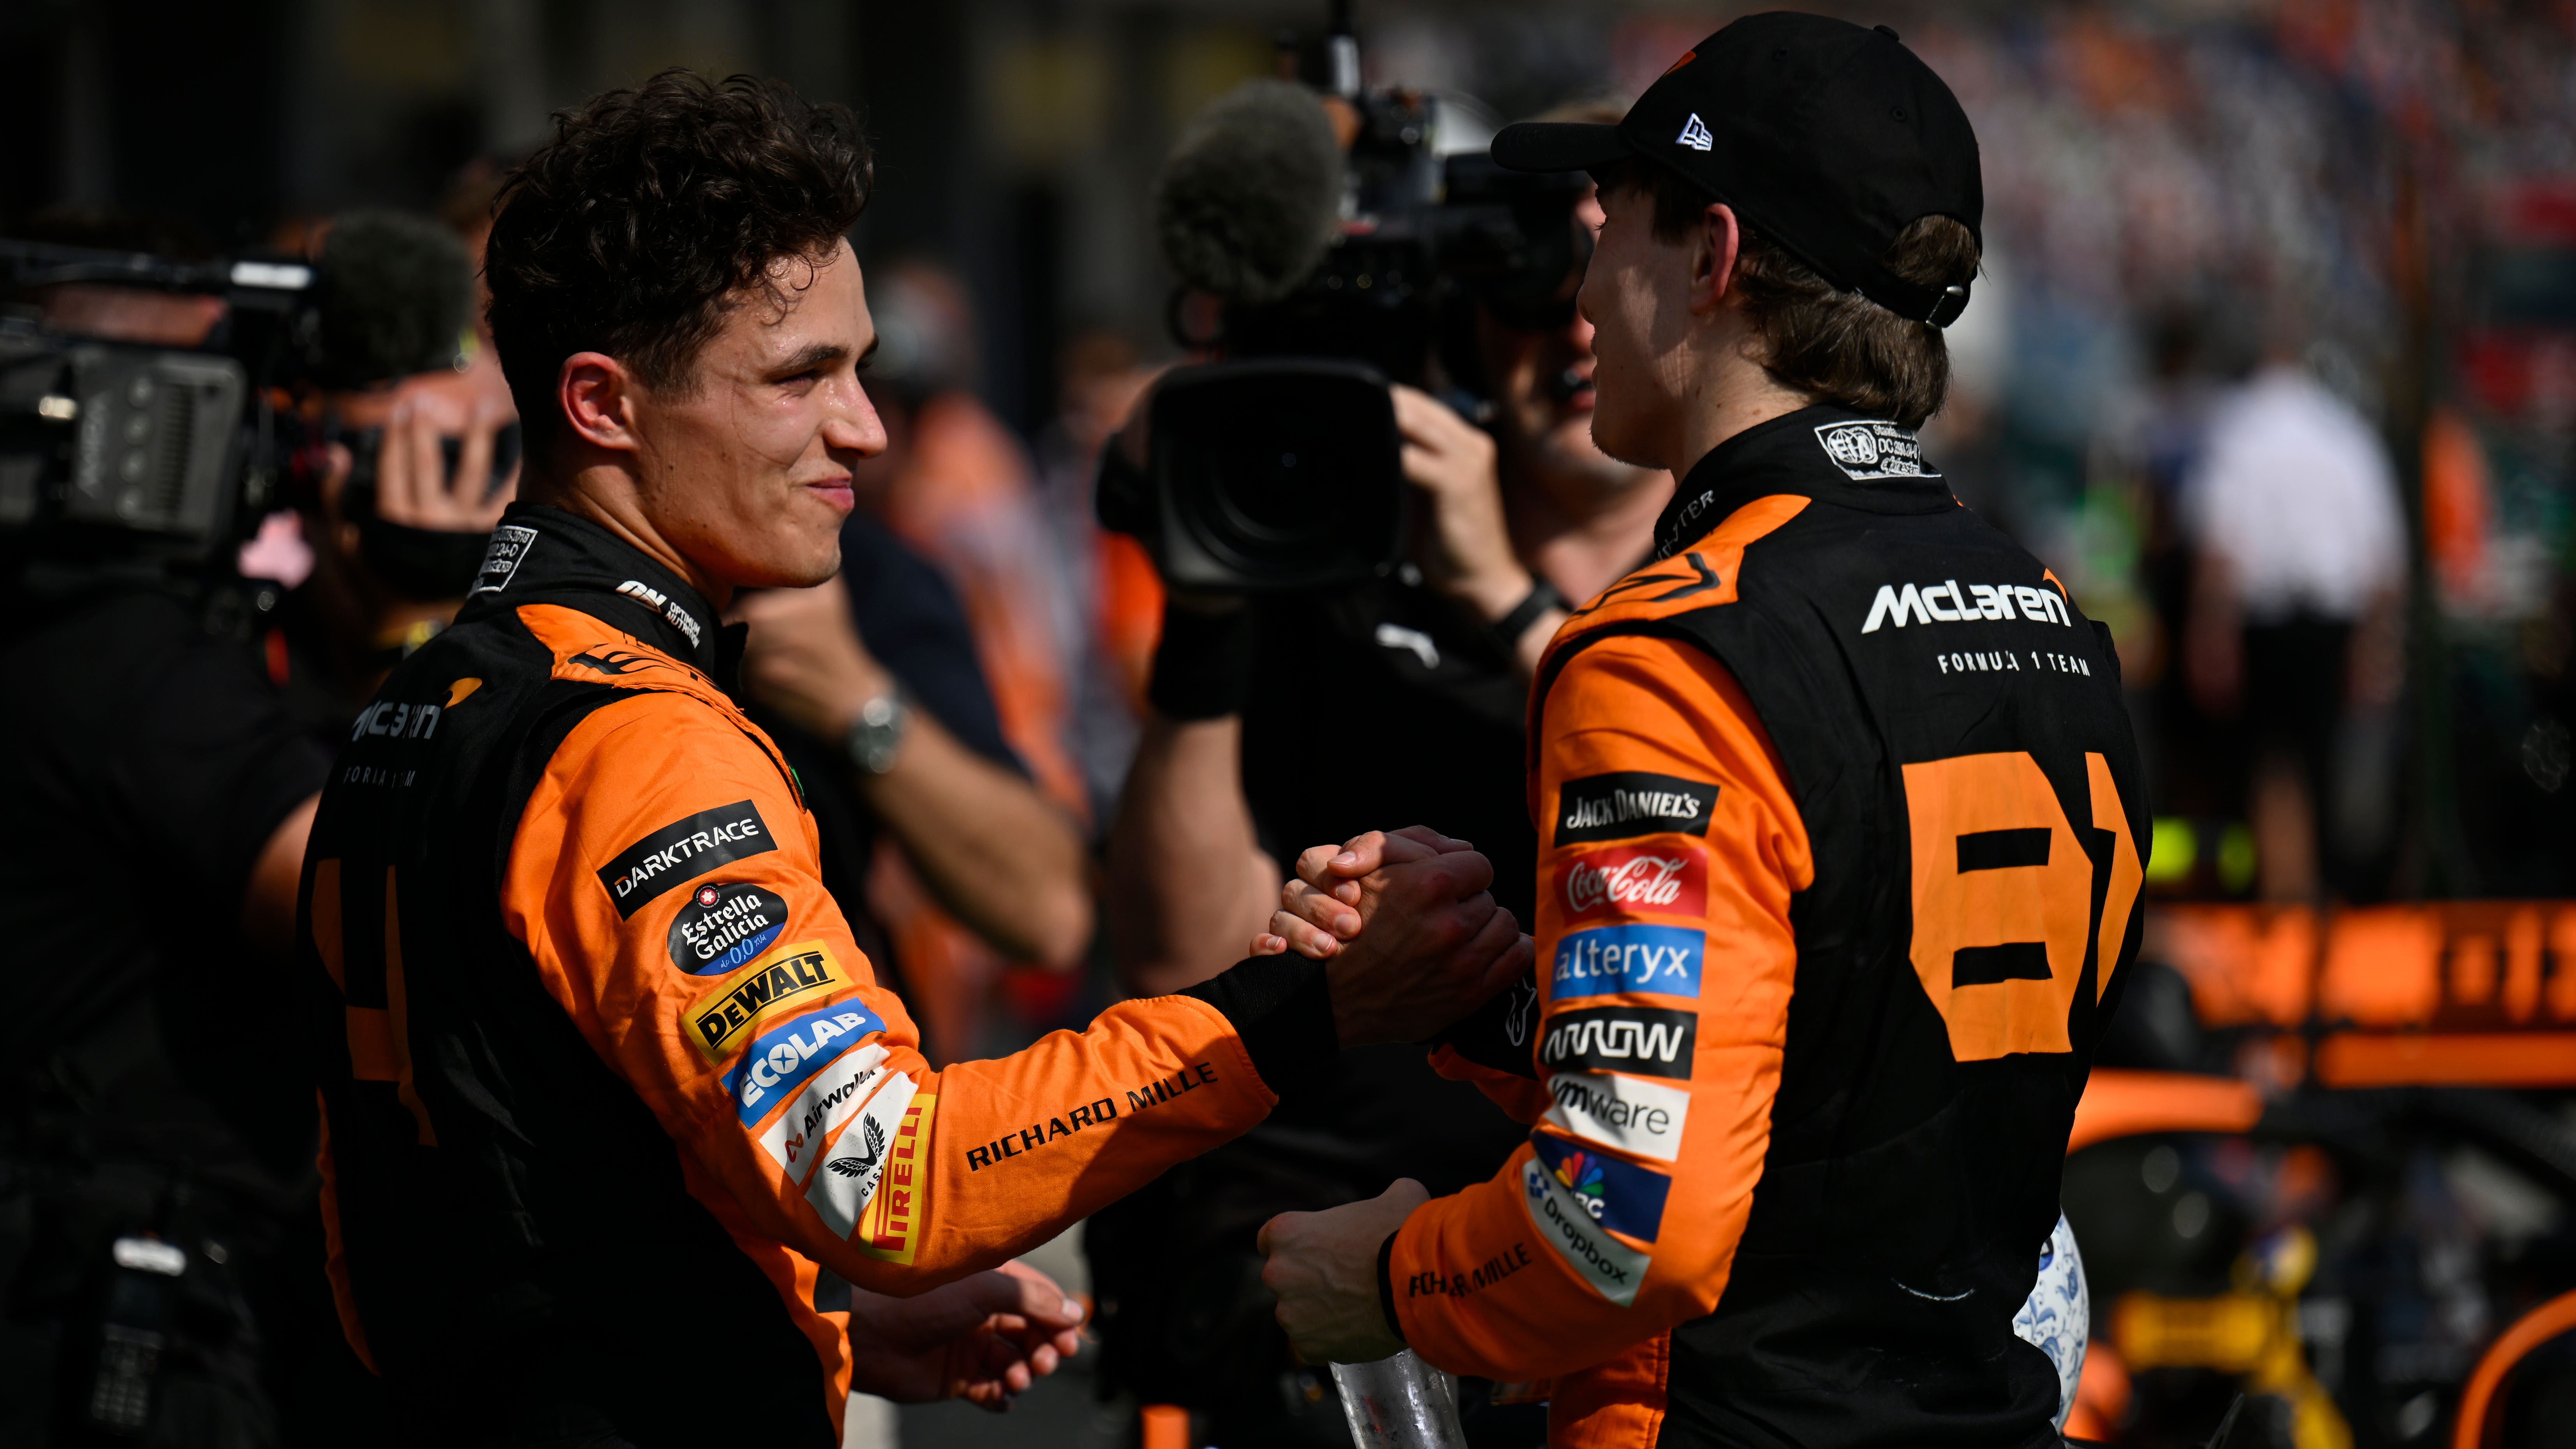 Oscar Piastri triumphant in Hungary as Lando Norris made to follow McLaren order